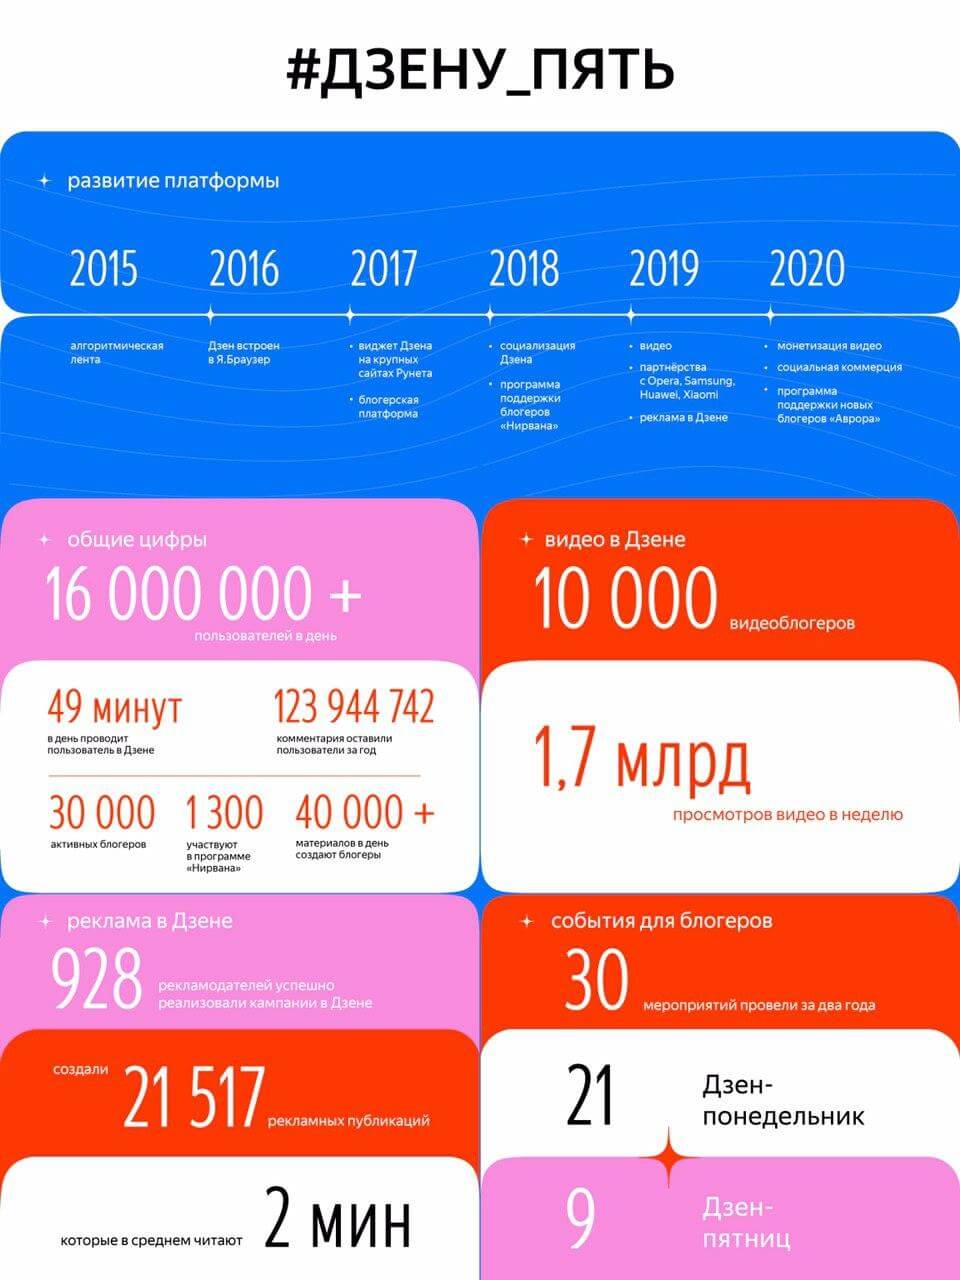 Яндекс.Дзен представил статистику в честь 5-летия